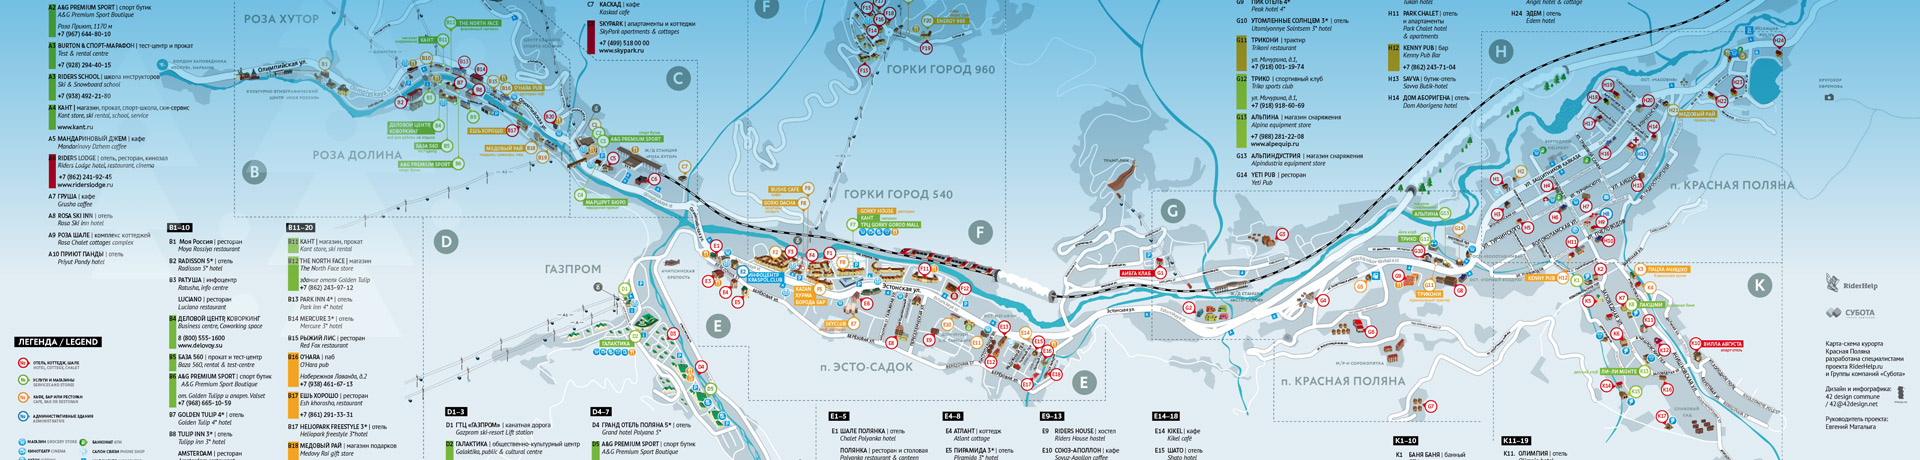 Карта Красной Поляны и Роза Хутор в Сочи